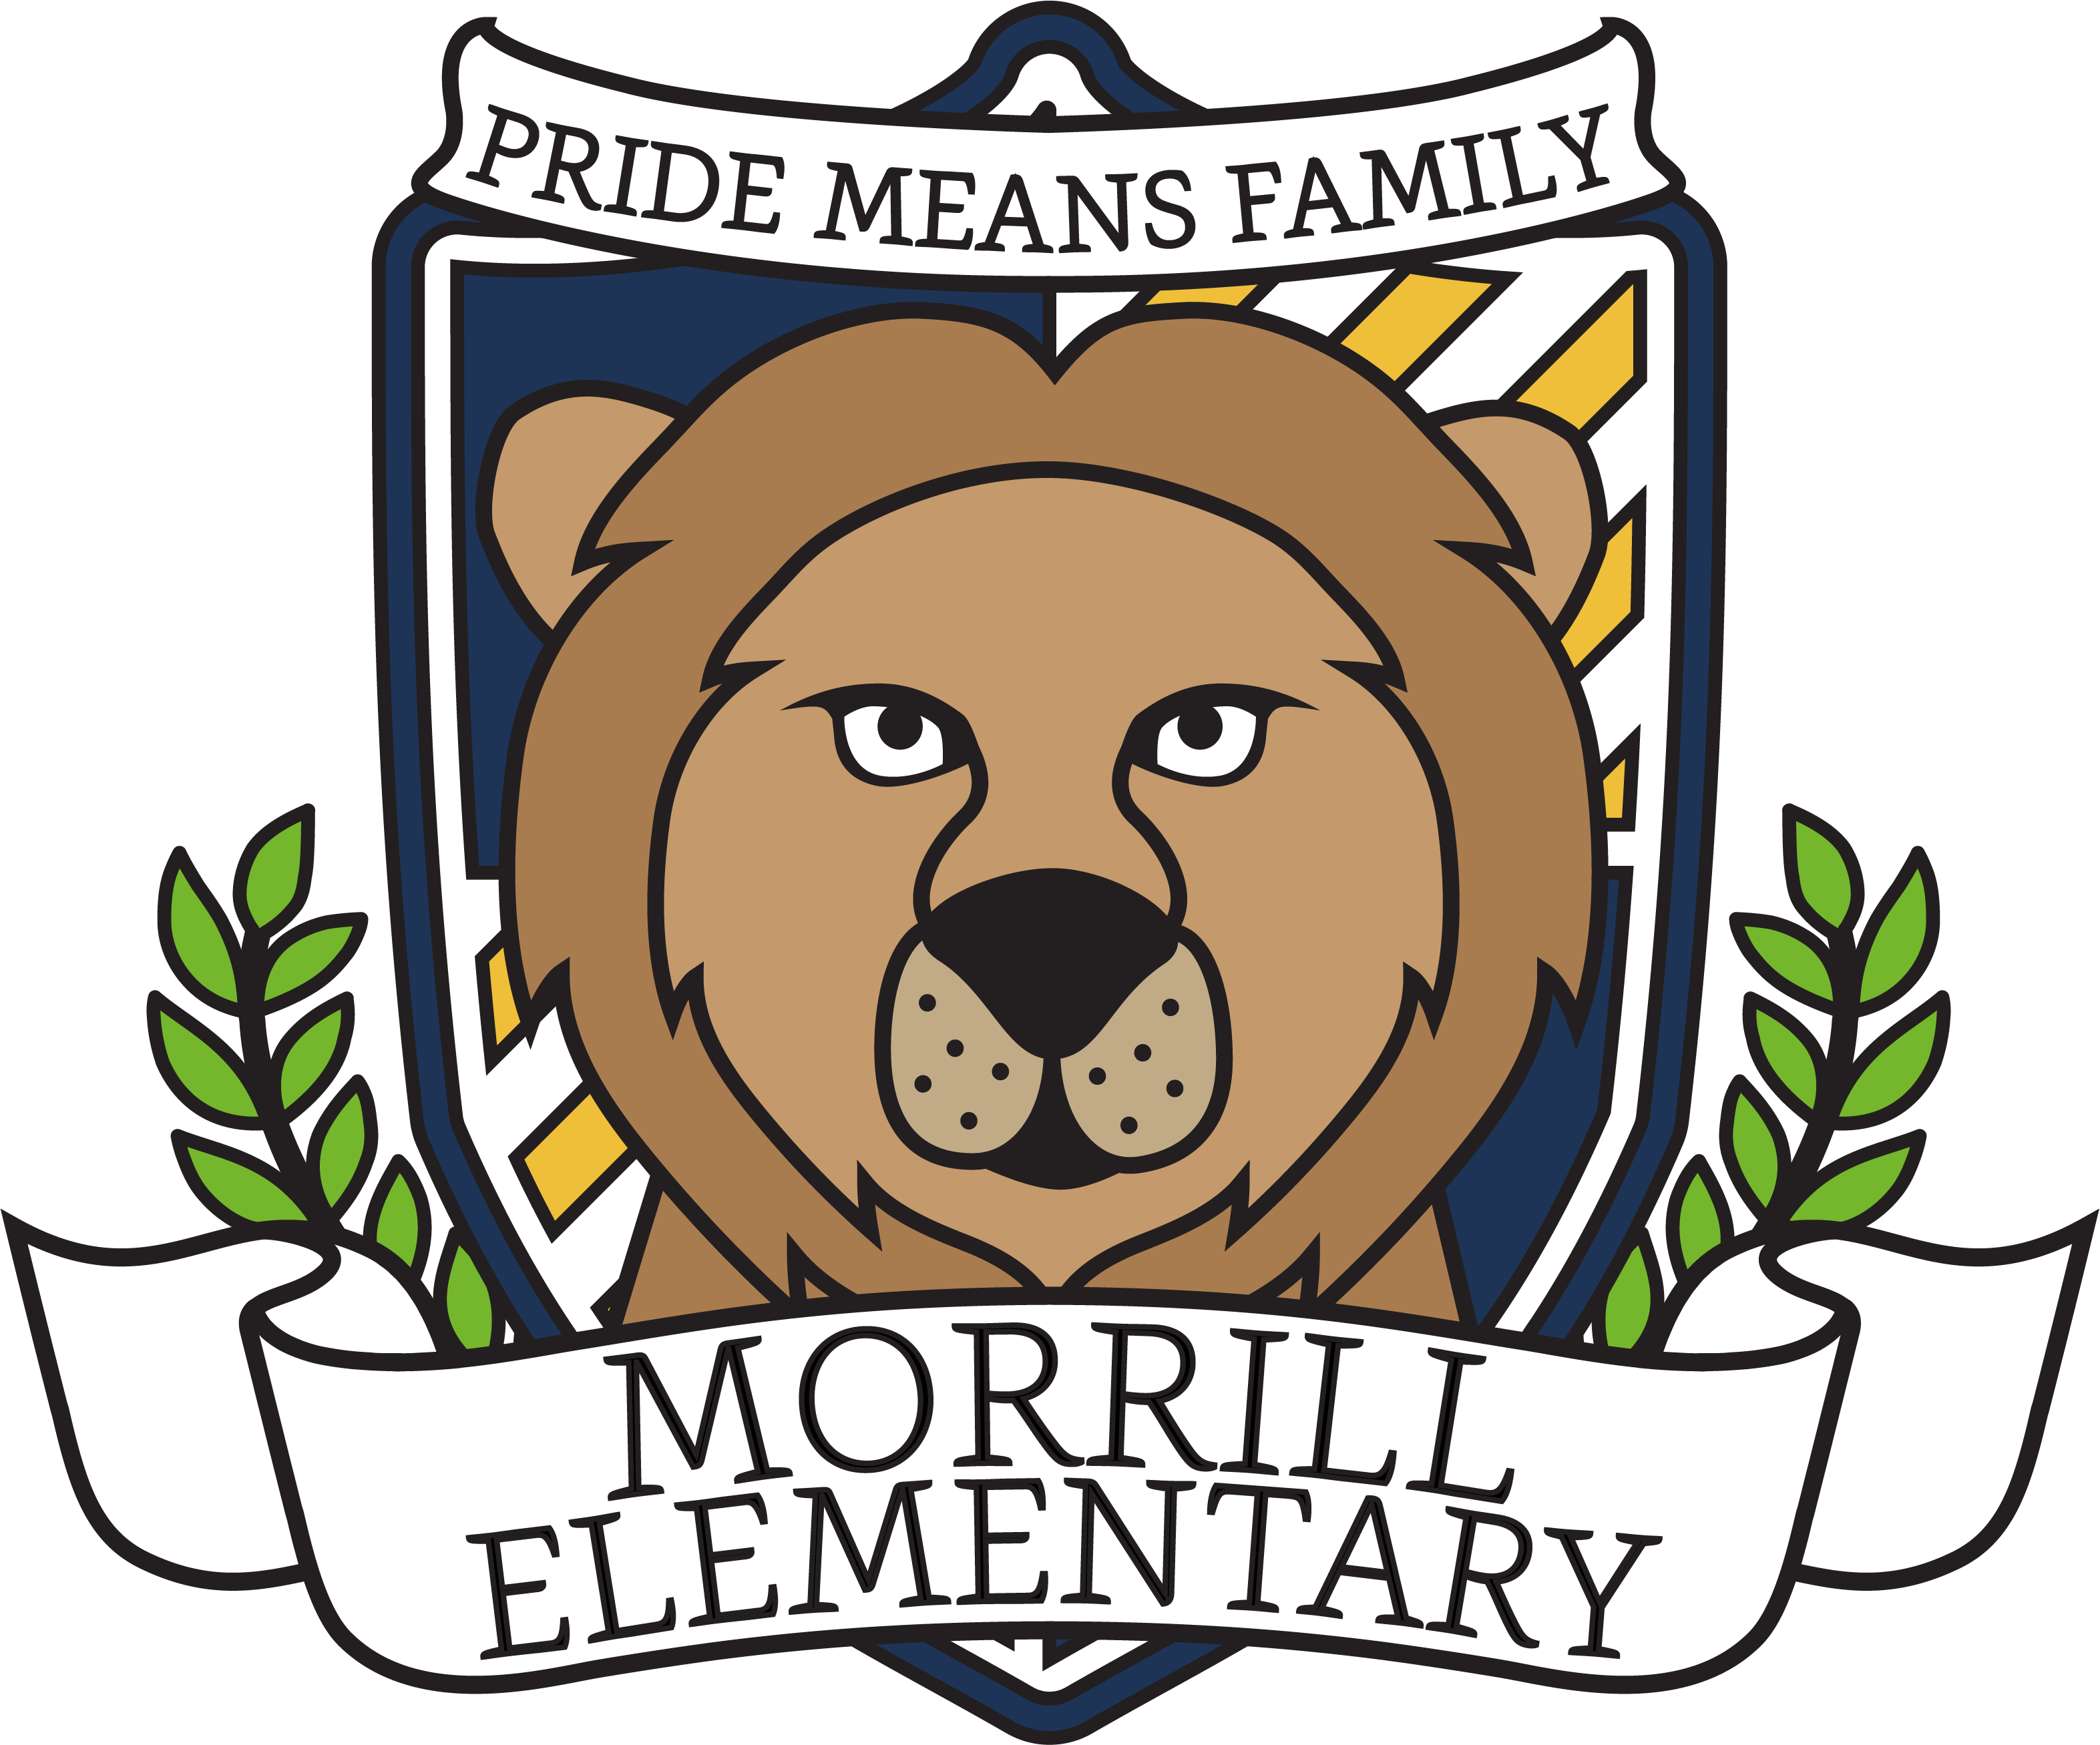 Morrill Elementary